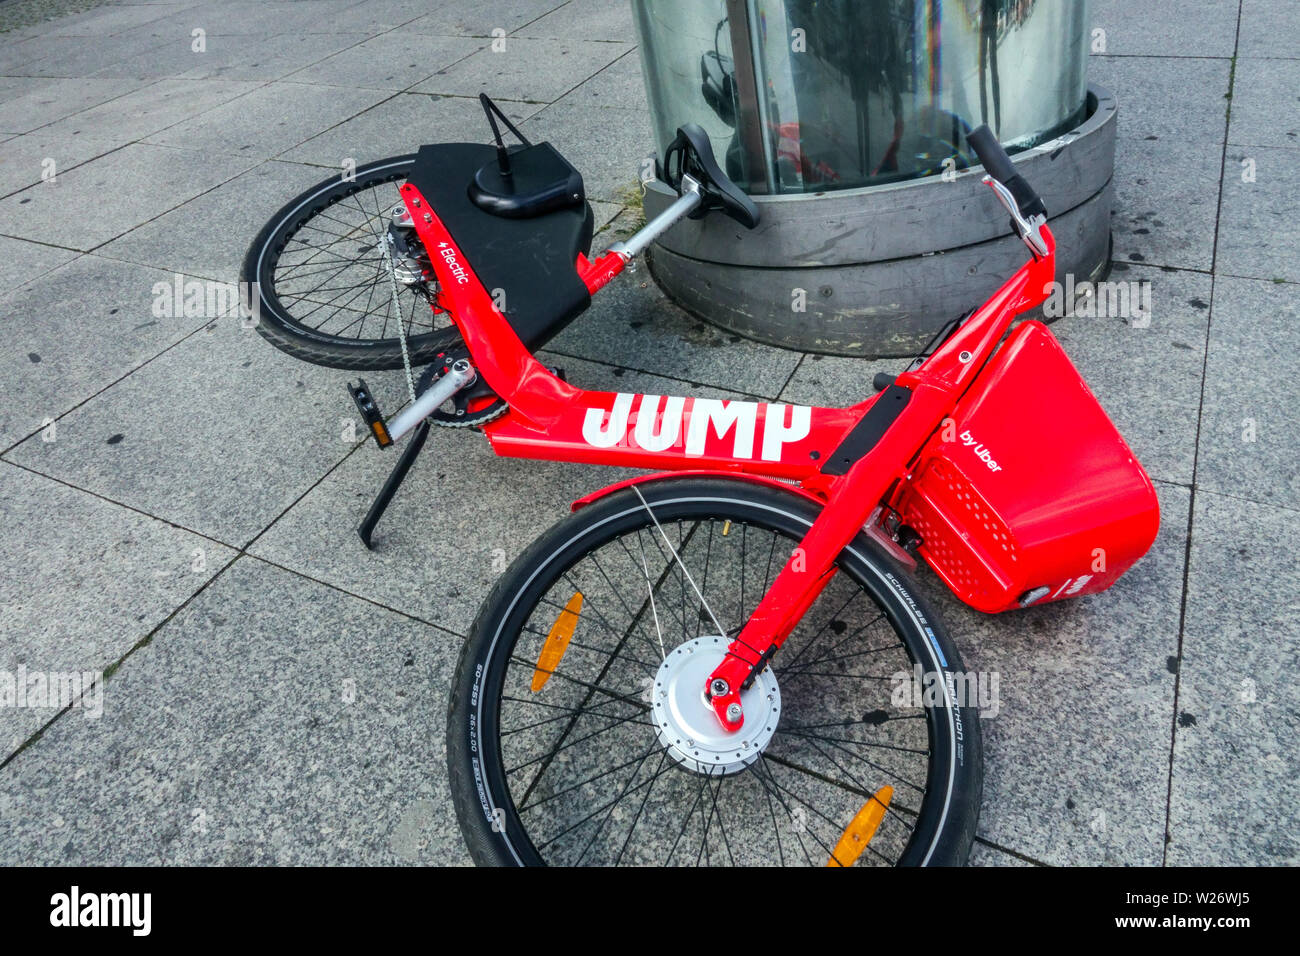 Noleggio bici elettriche da Uber, Berlino Germania Foto Stock